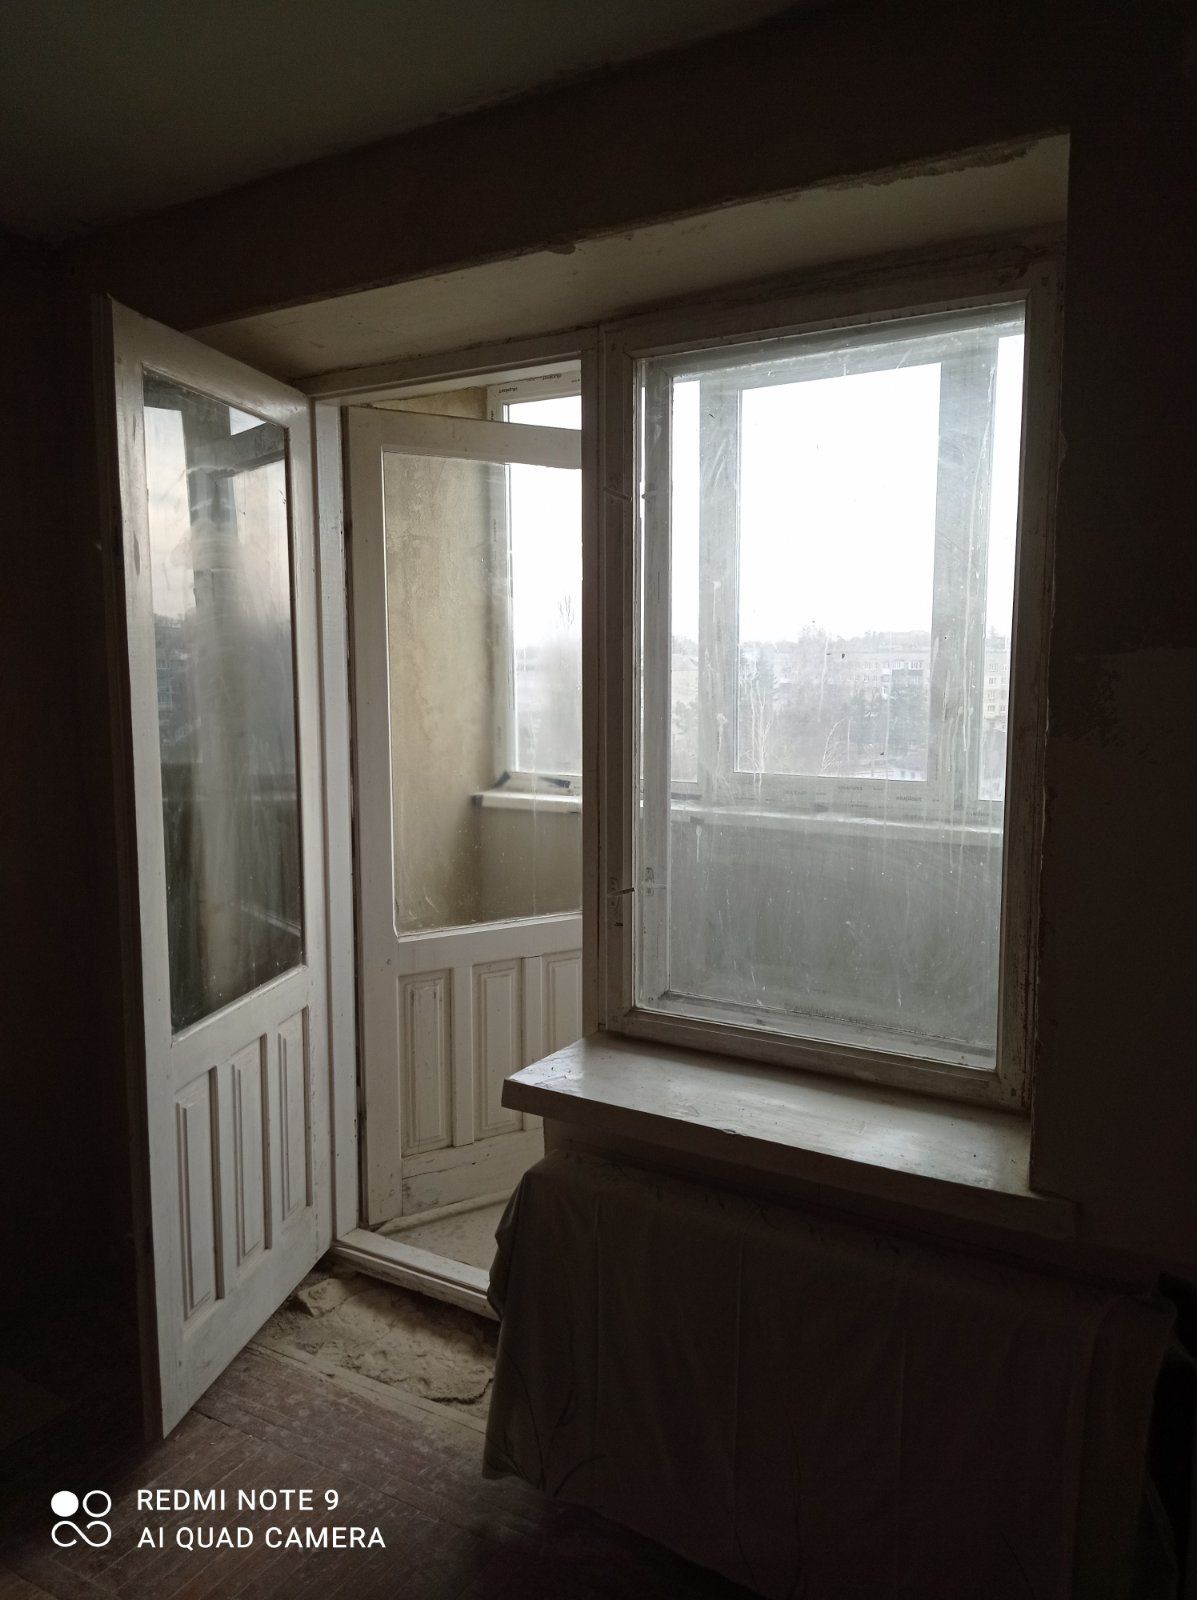 Двері і вікно на балкон